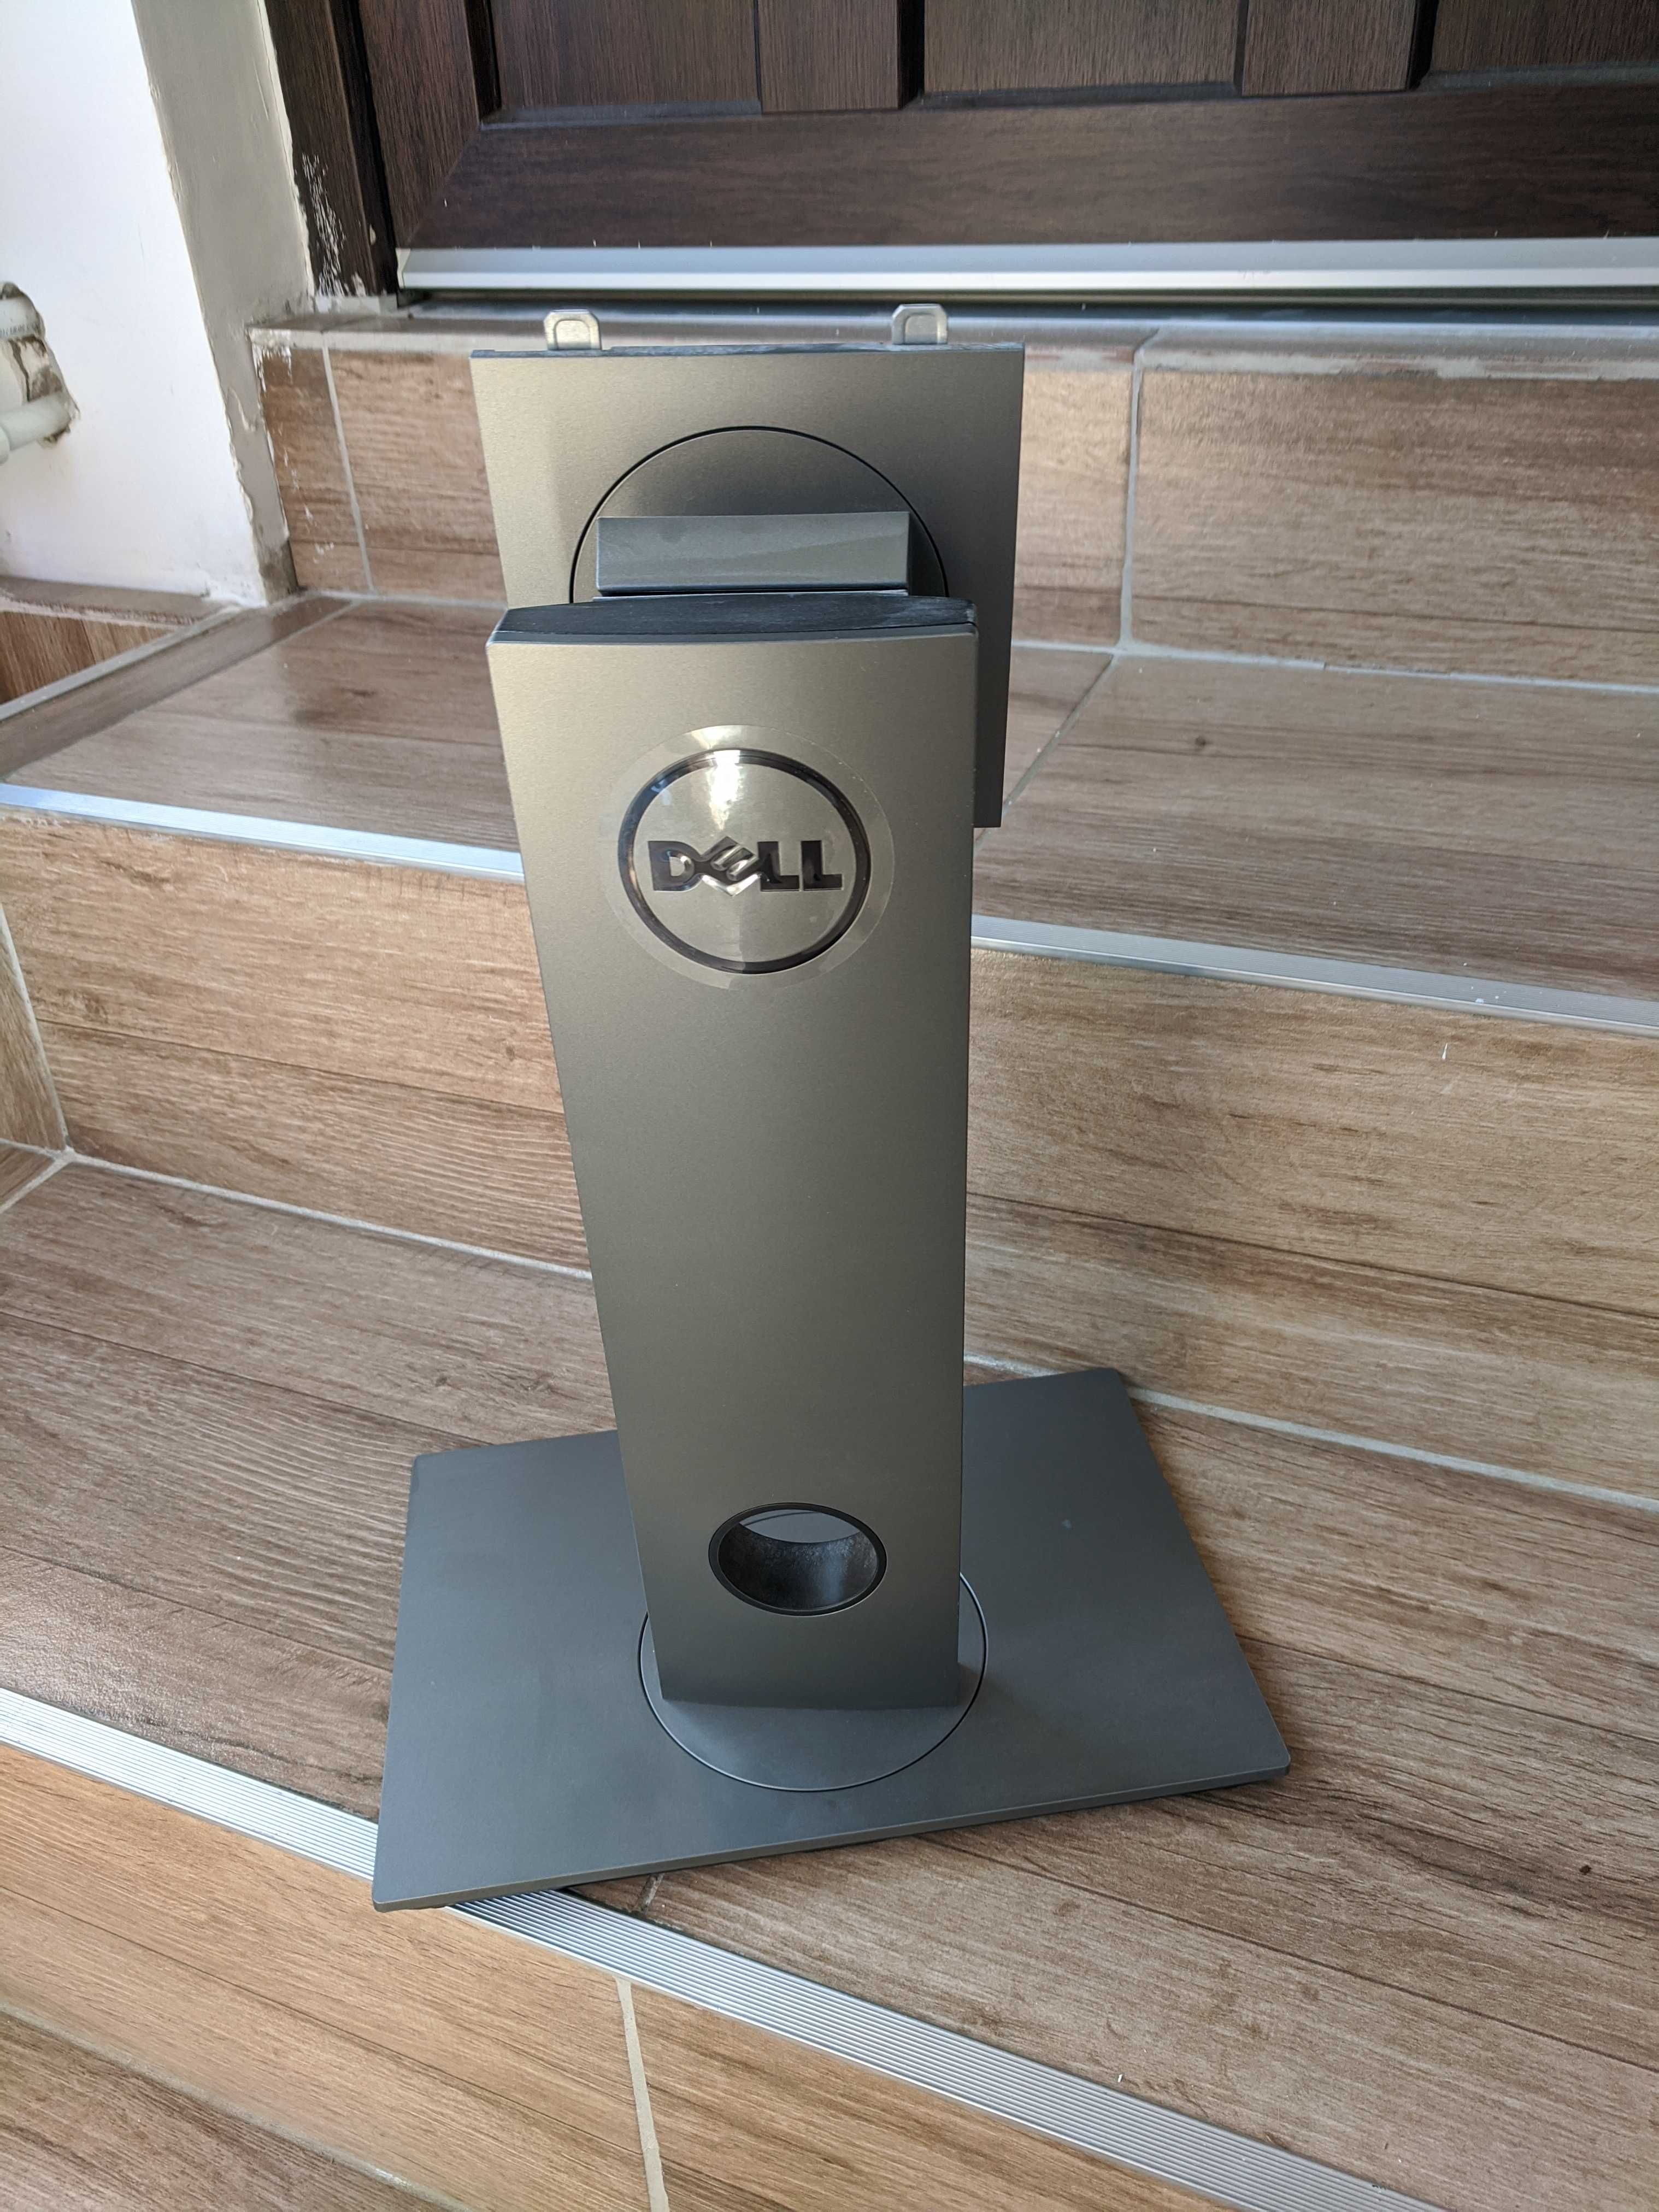 Suport pentru monitor Dell